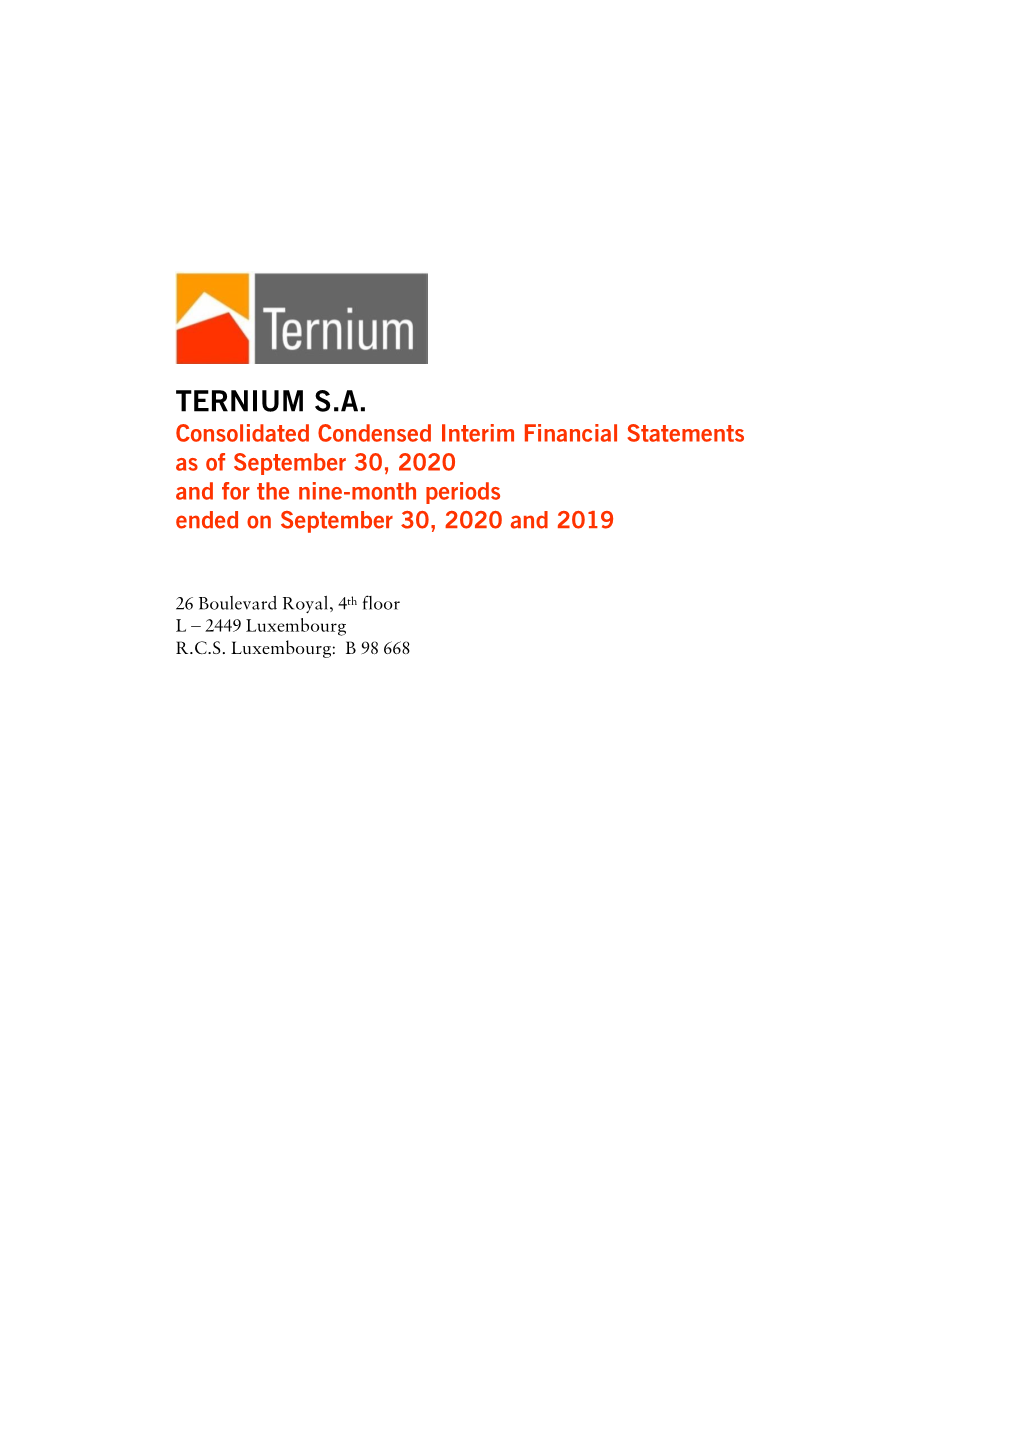 FS Ternium S.A